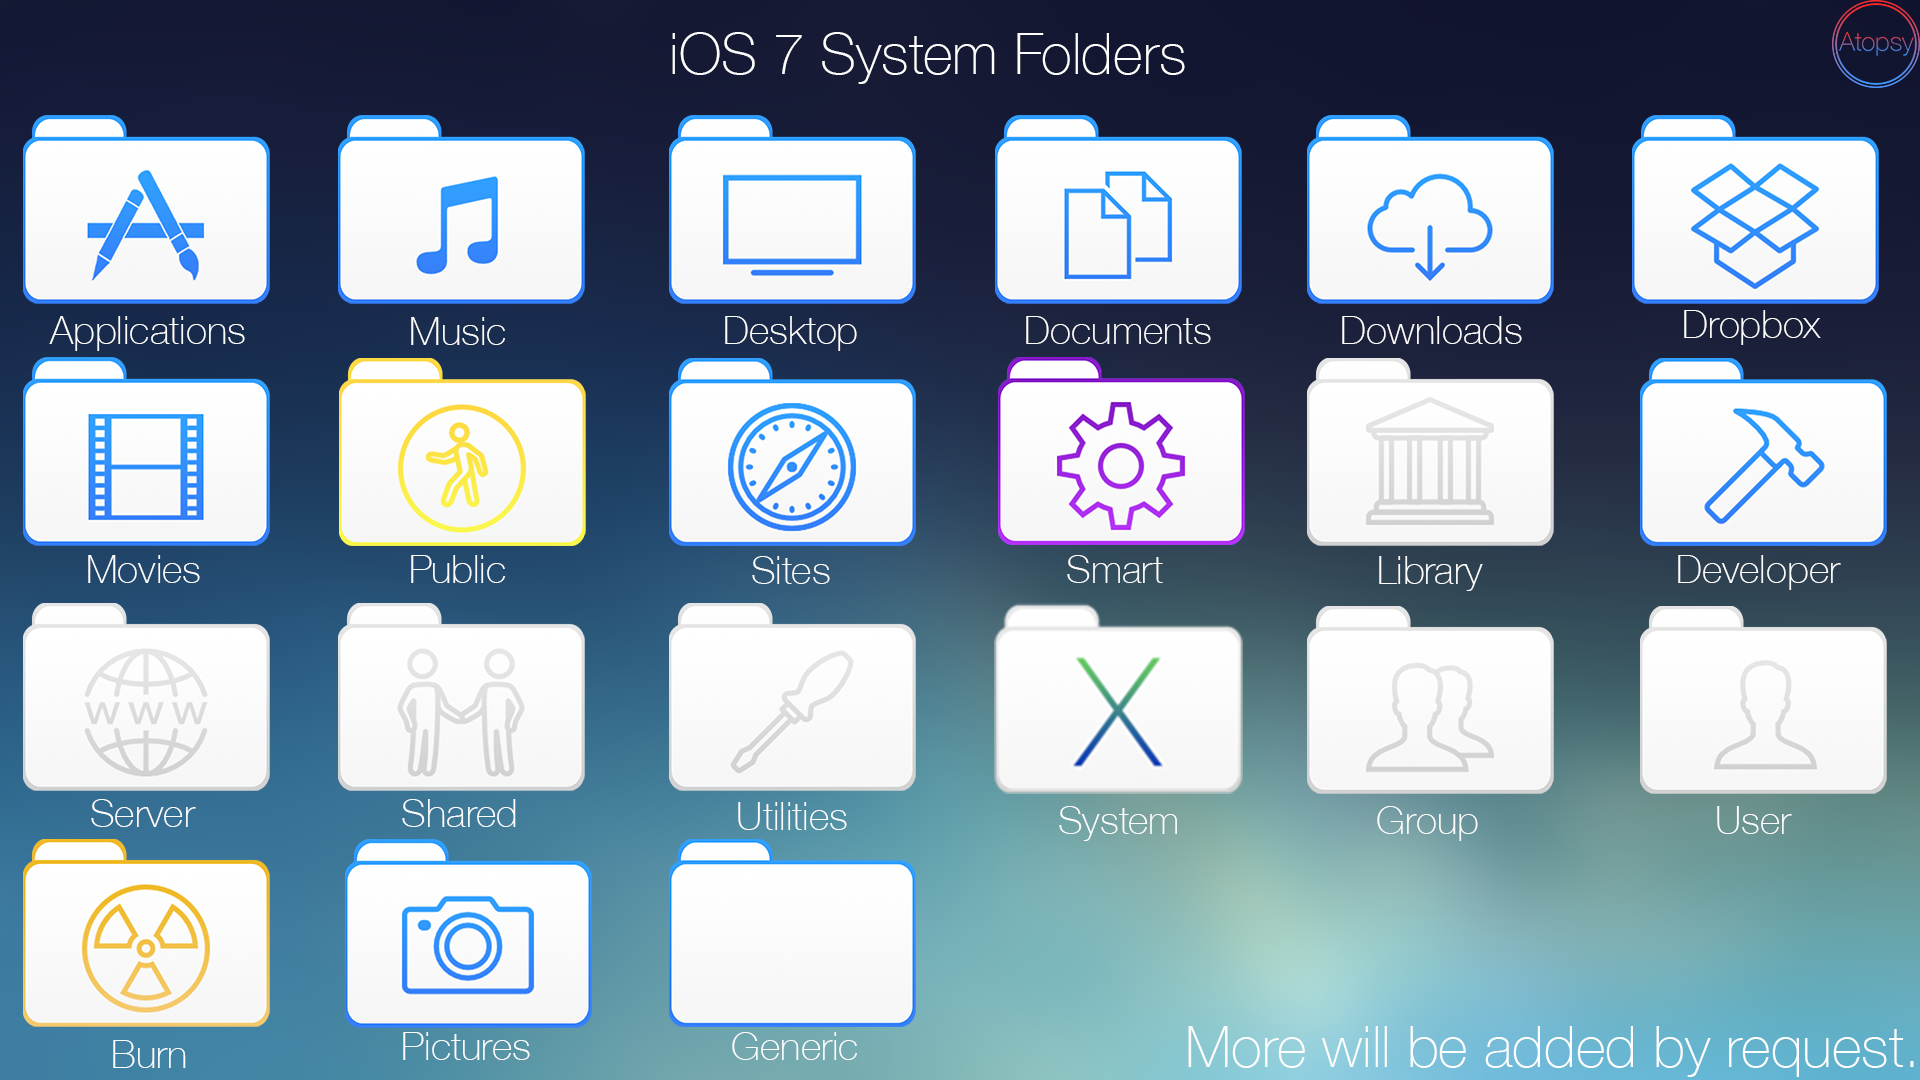 iOS 7 Style Folder Icons